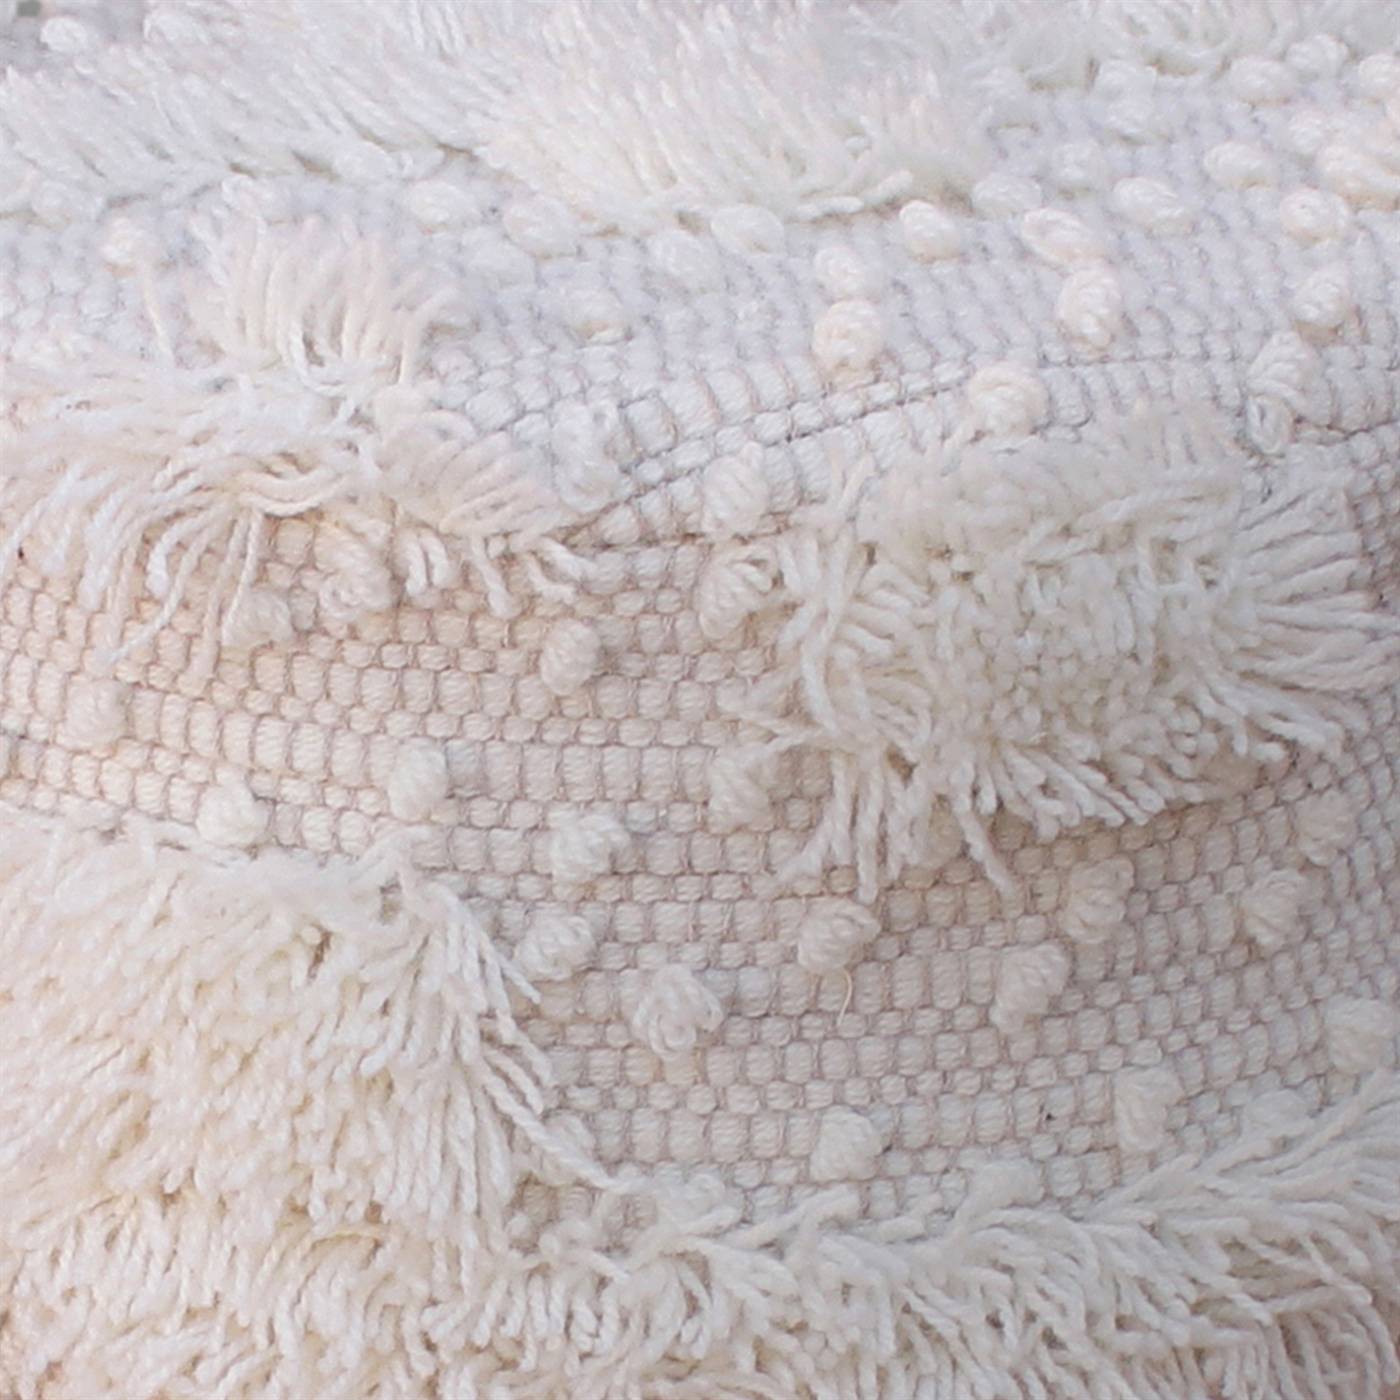 Parkin Bar Stool, 40x40x70 cm, Natural White, NZ Wool, Hand Woven, Pitloom, Flat Weave